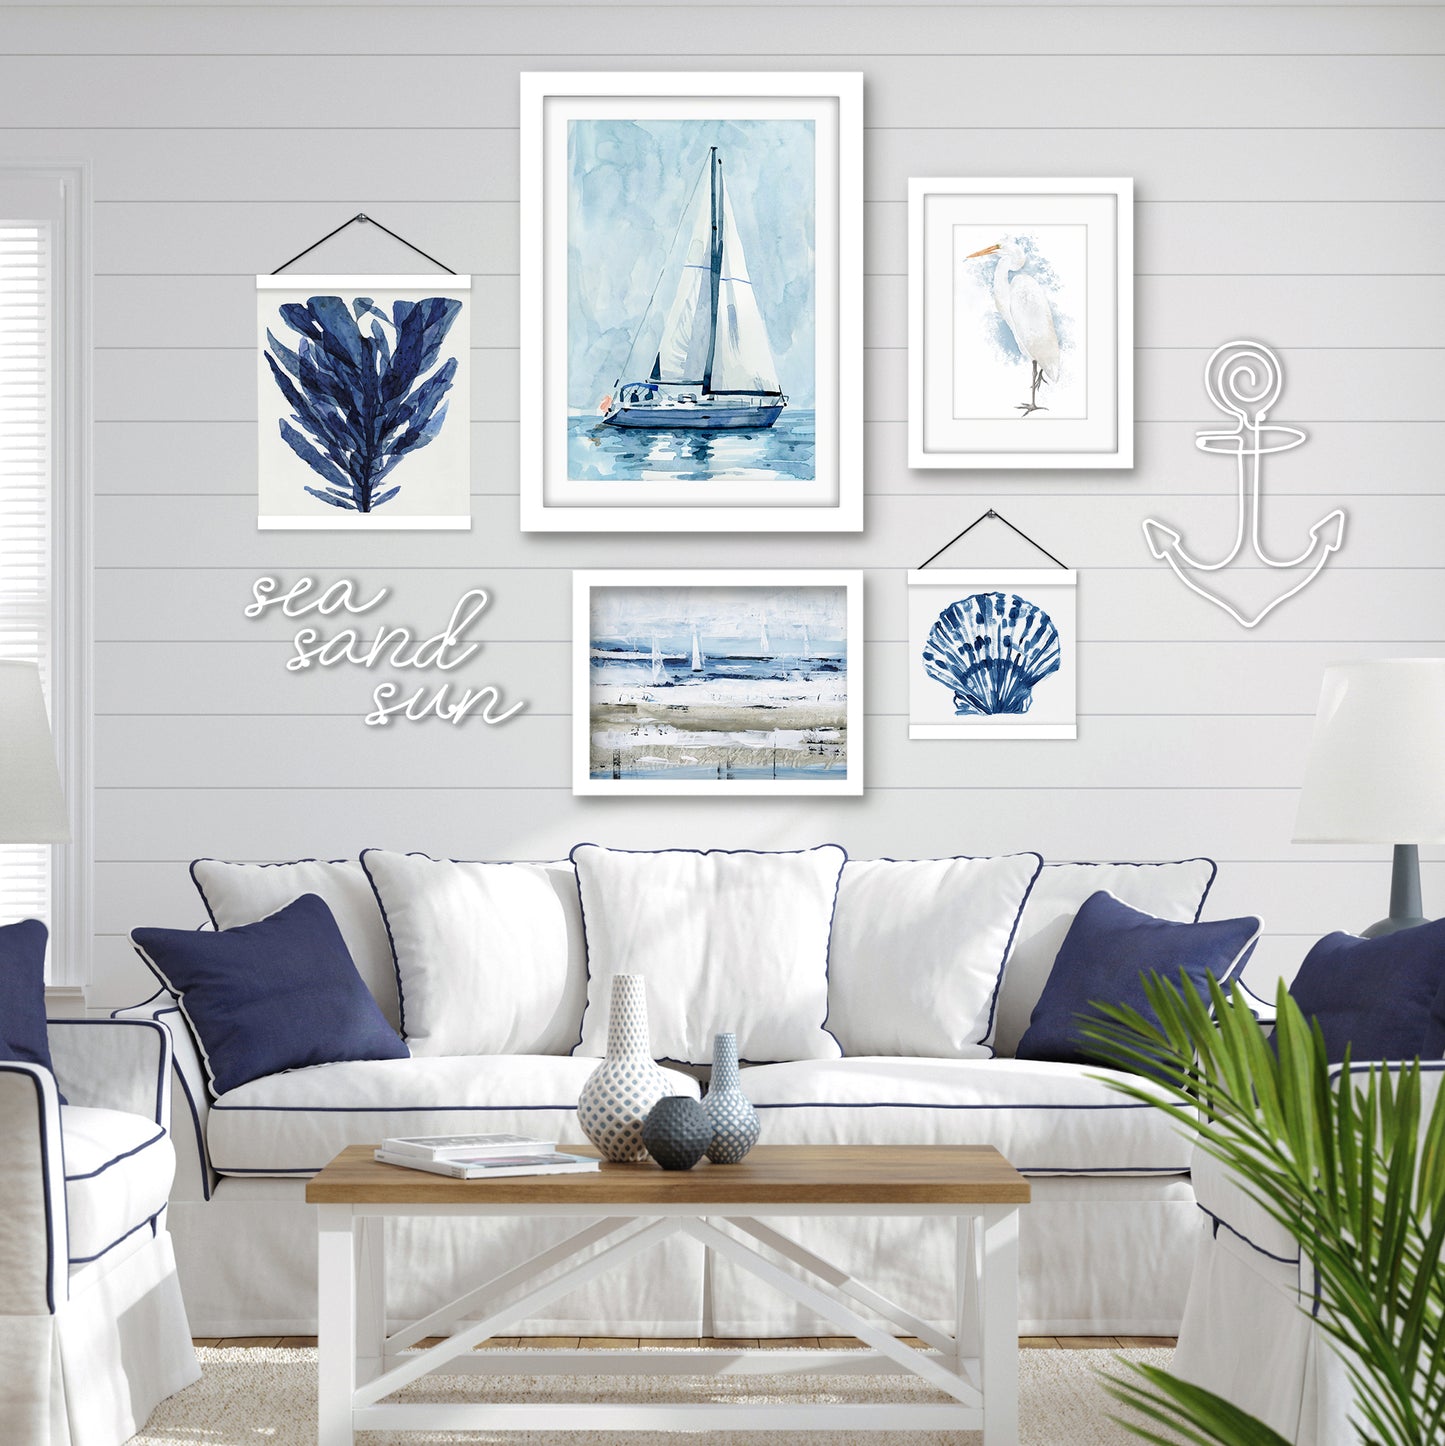 Blue Natural Sailing - Framed Multimedia Gallery Art Set